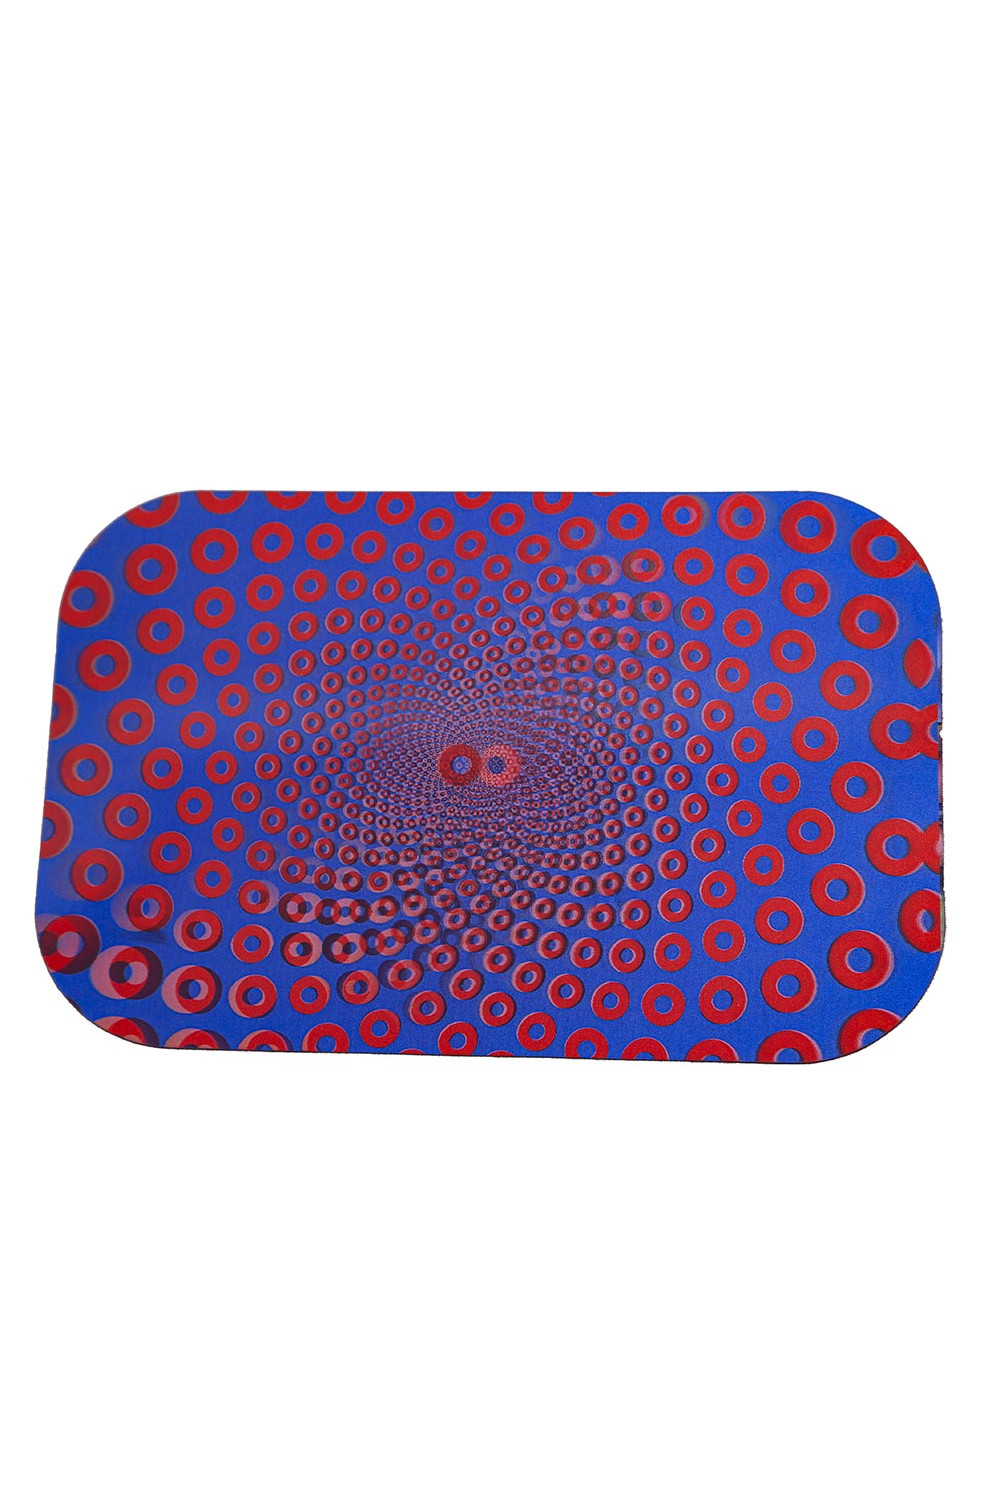 Donut Vortex Large 3D Lenticular Magnetic Cover Lid